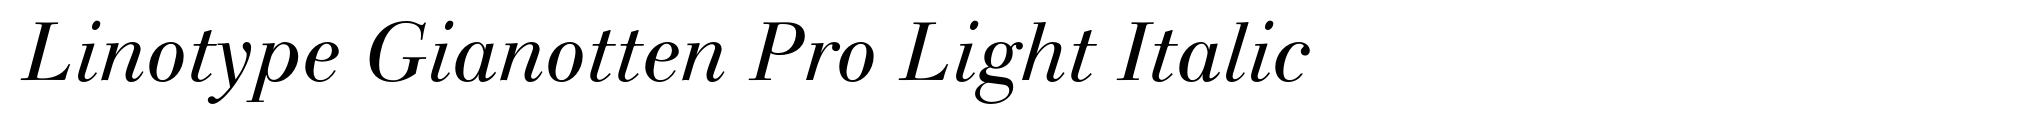 Linotype Gianotten Pro Light Italic image